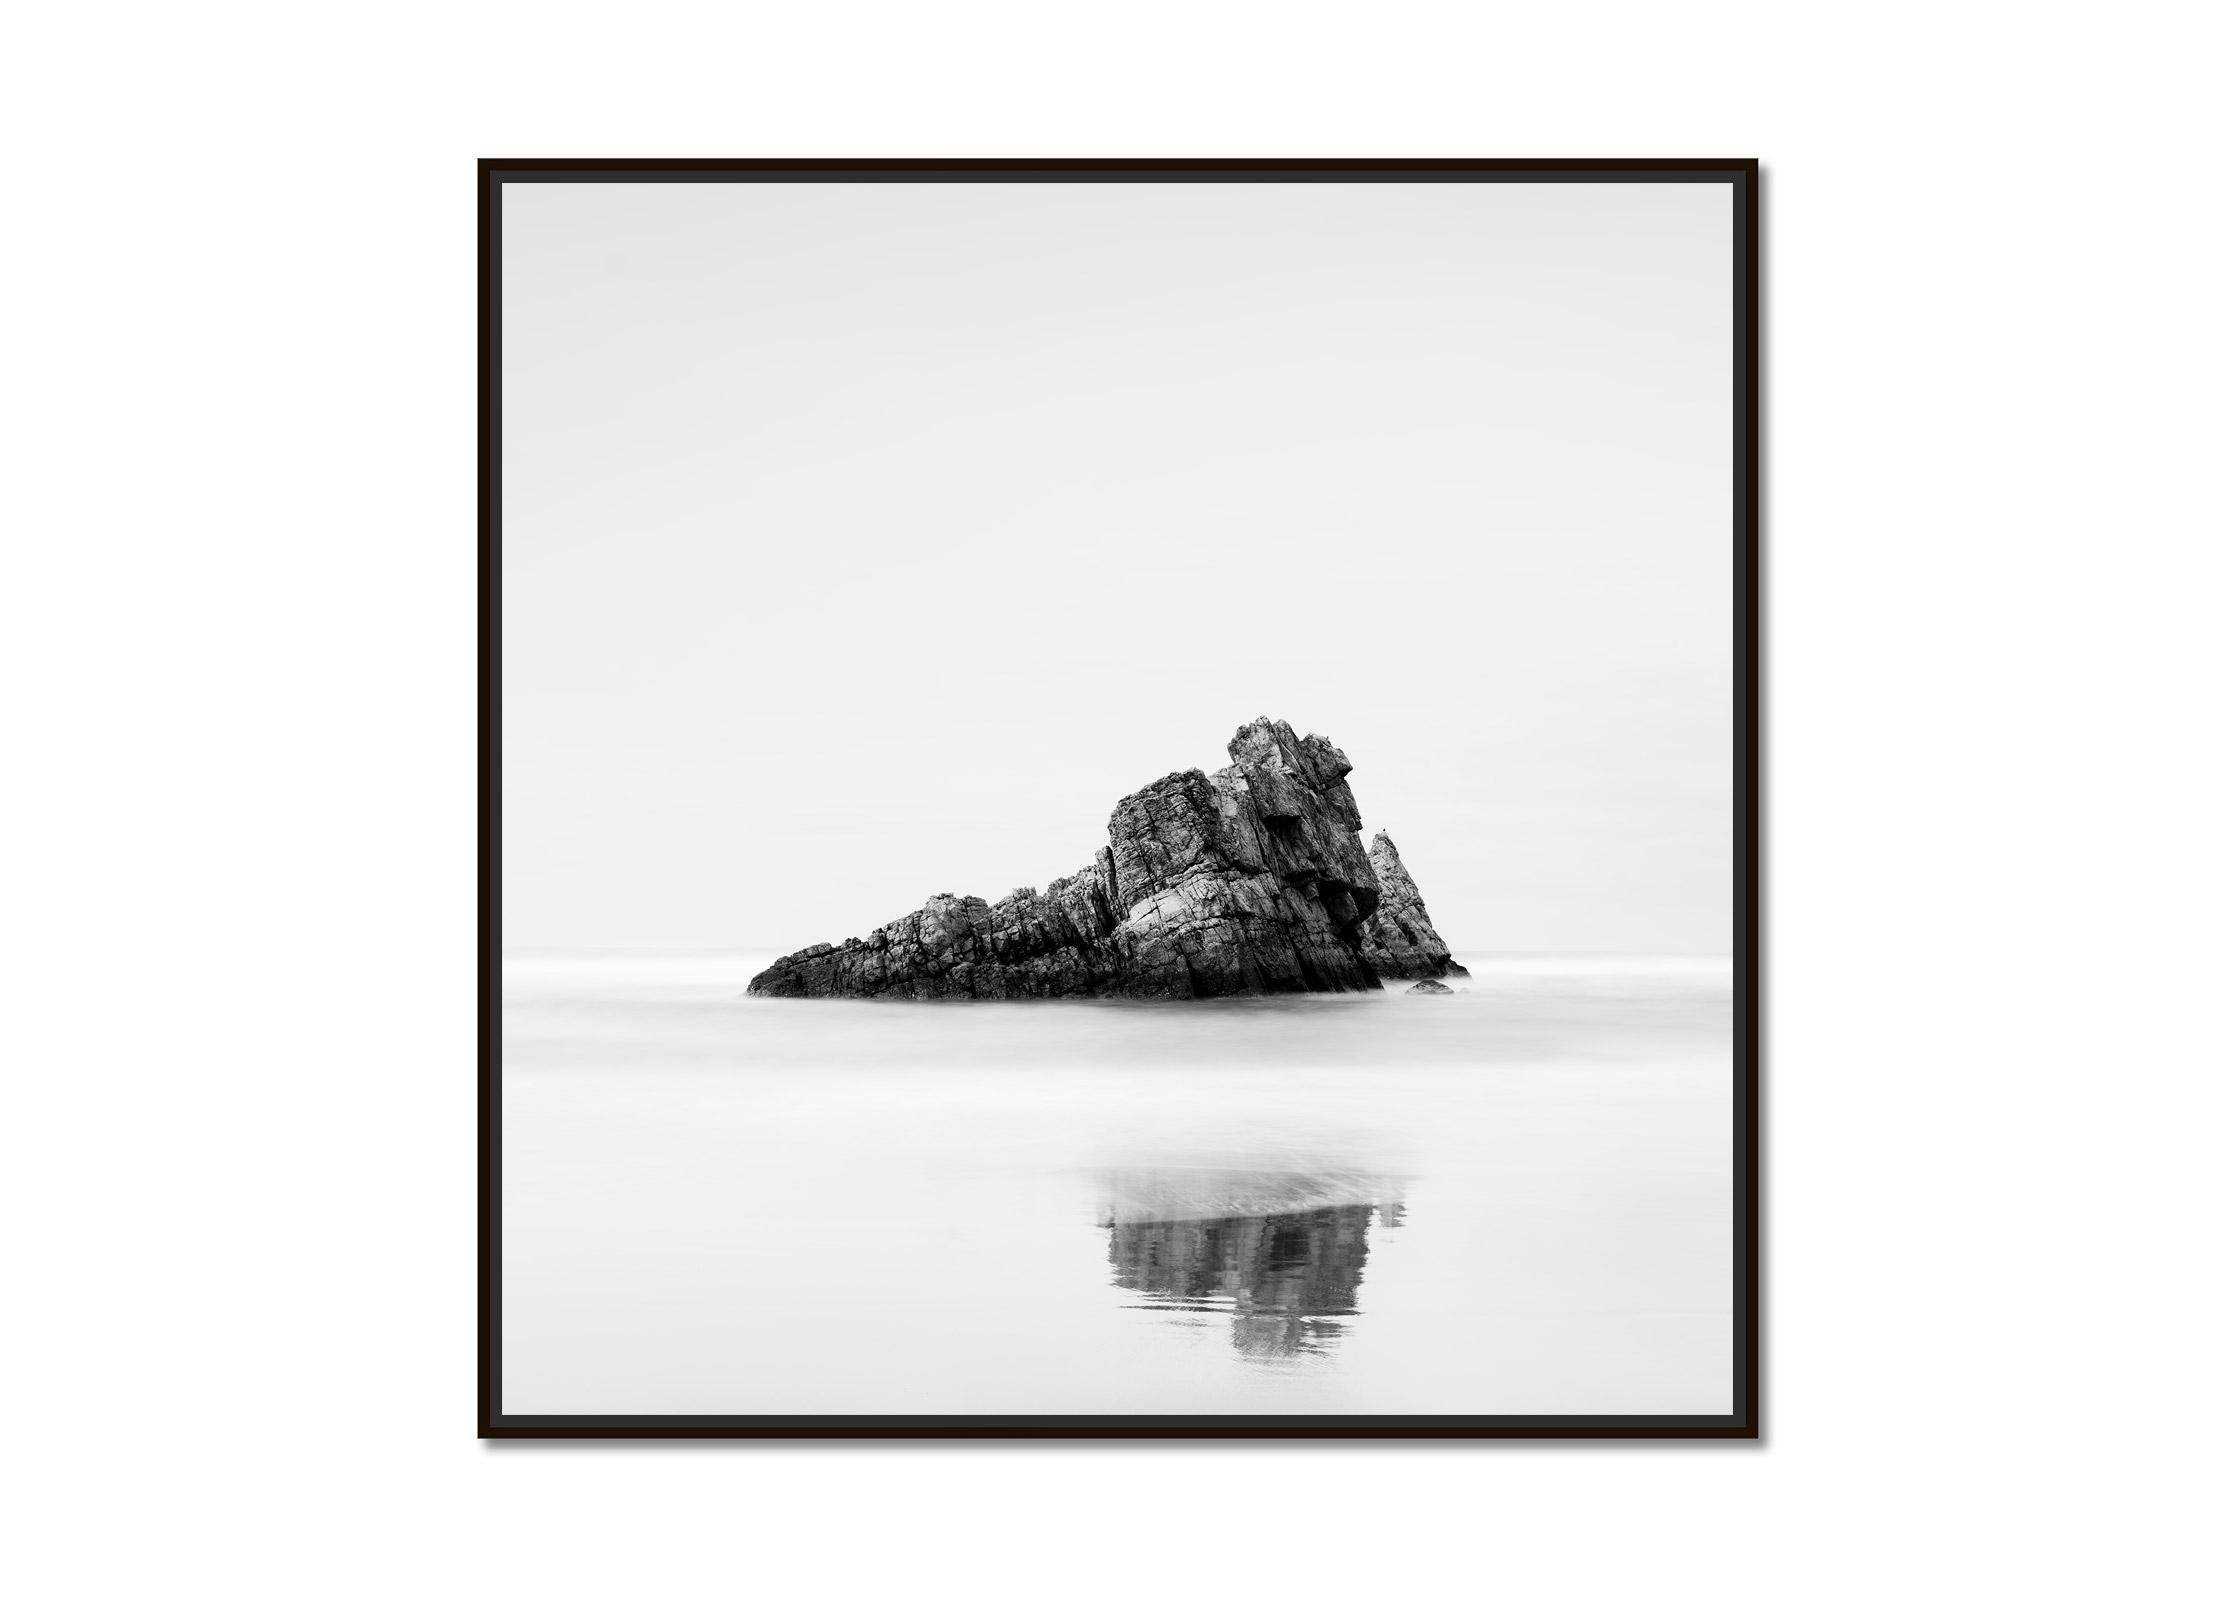 Rocher sur la plage, Golfe de Gascogne, Espagne, photographie de paysage en noir et blanc - Photograph de Gerald Berghammer